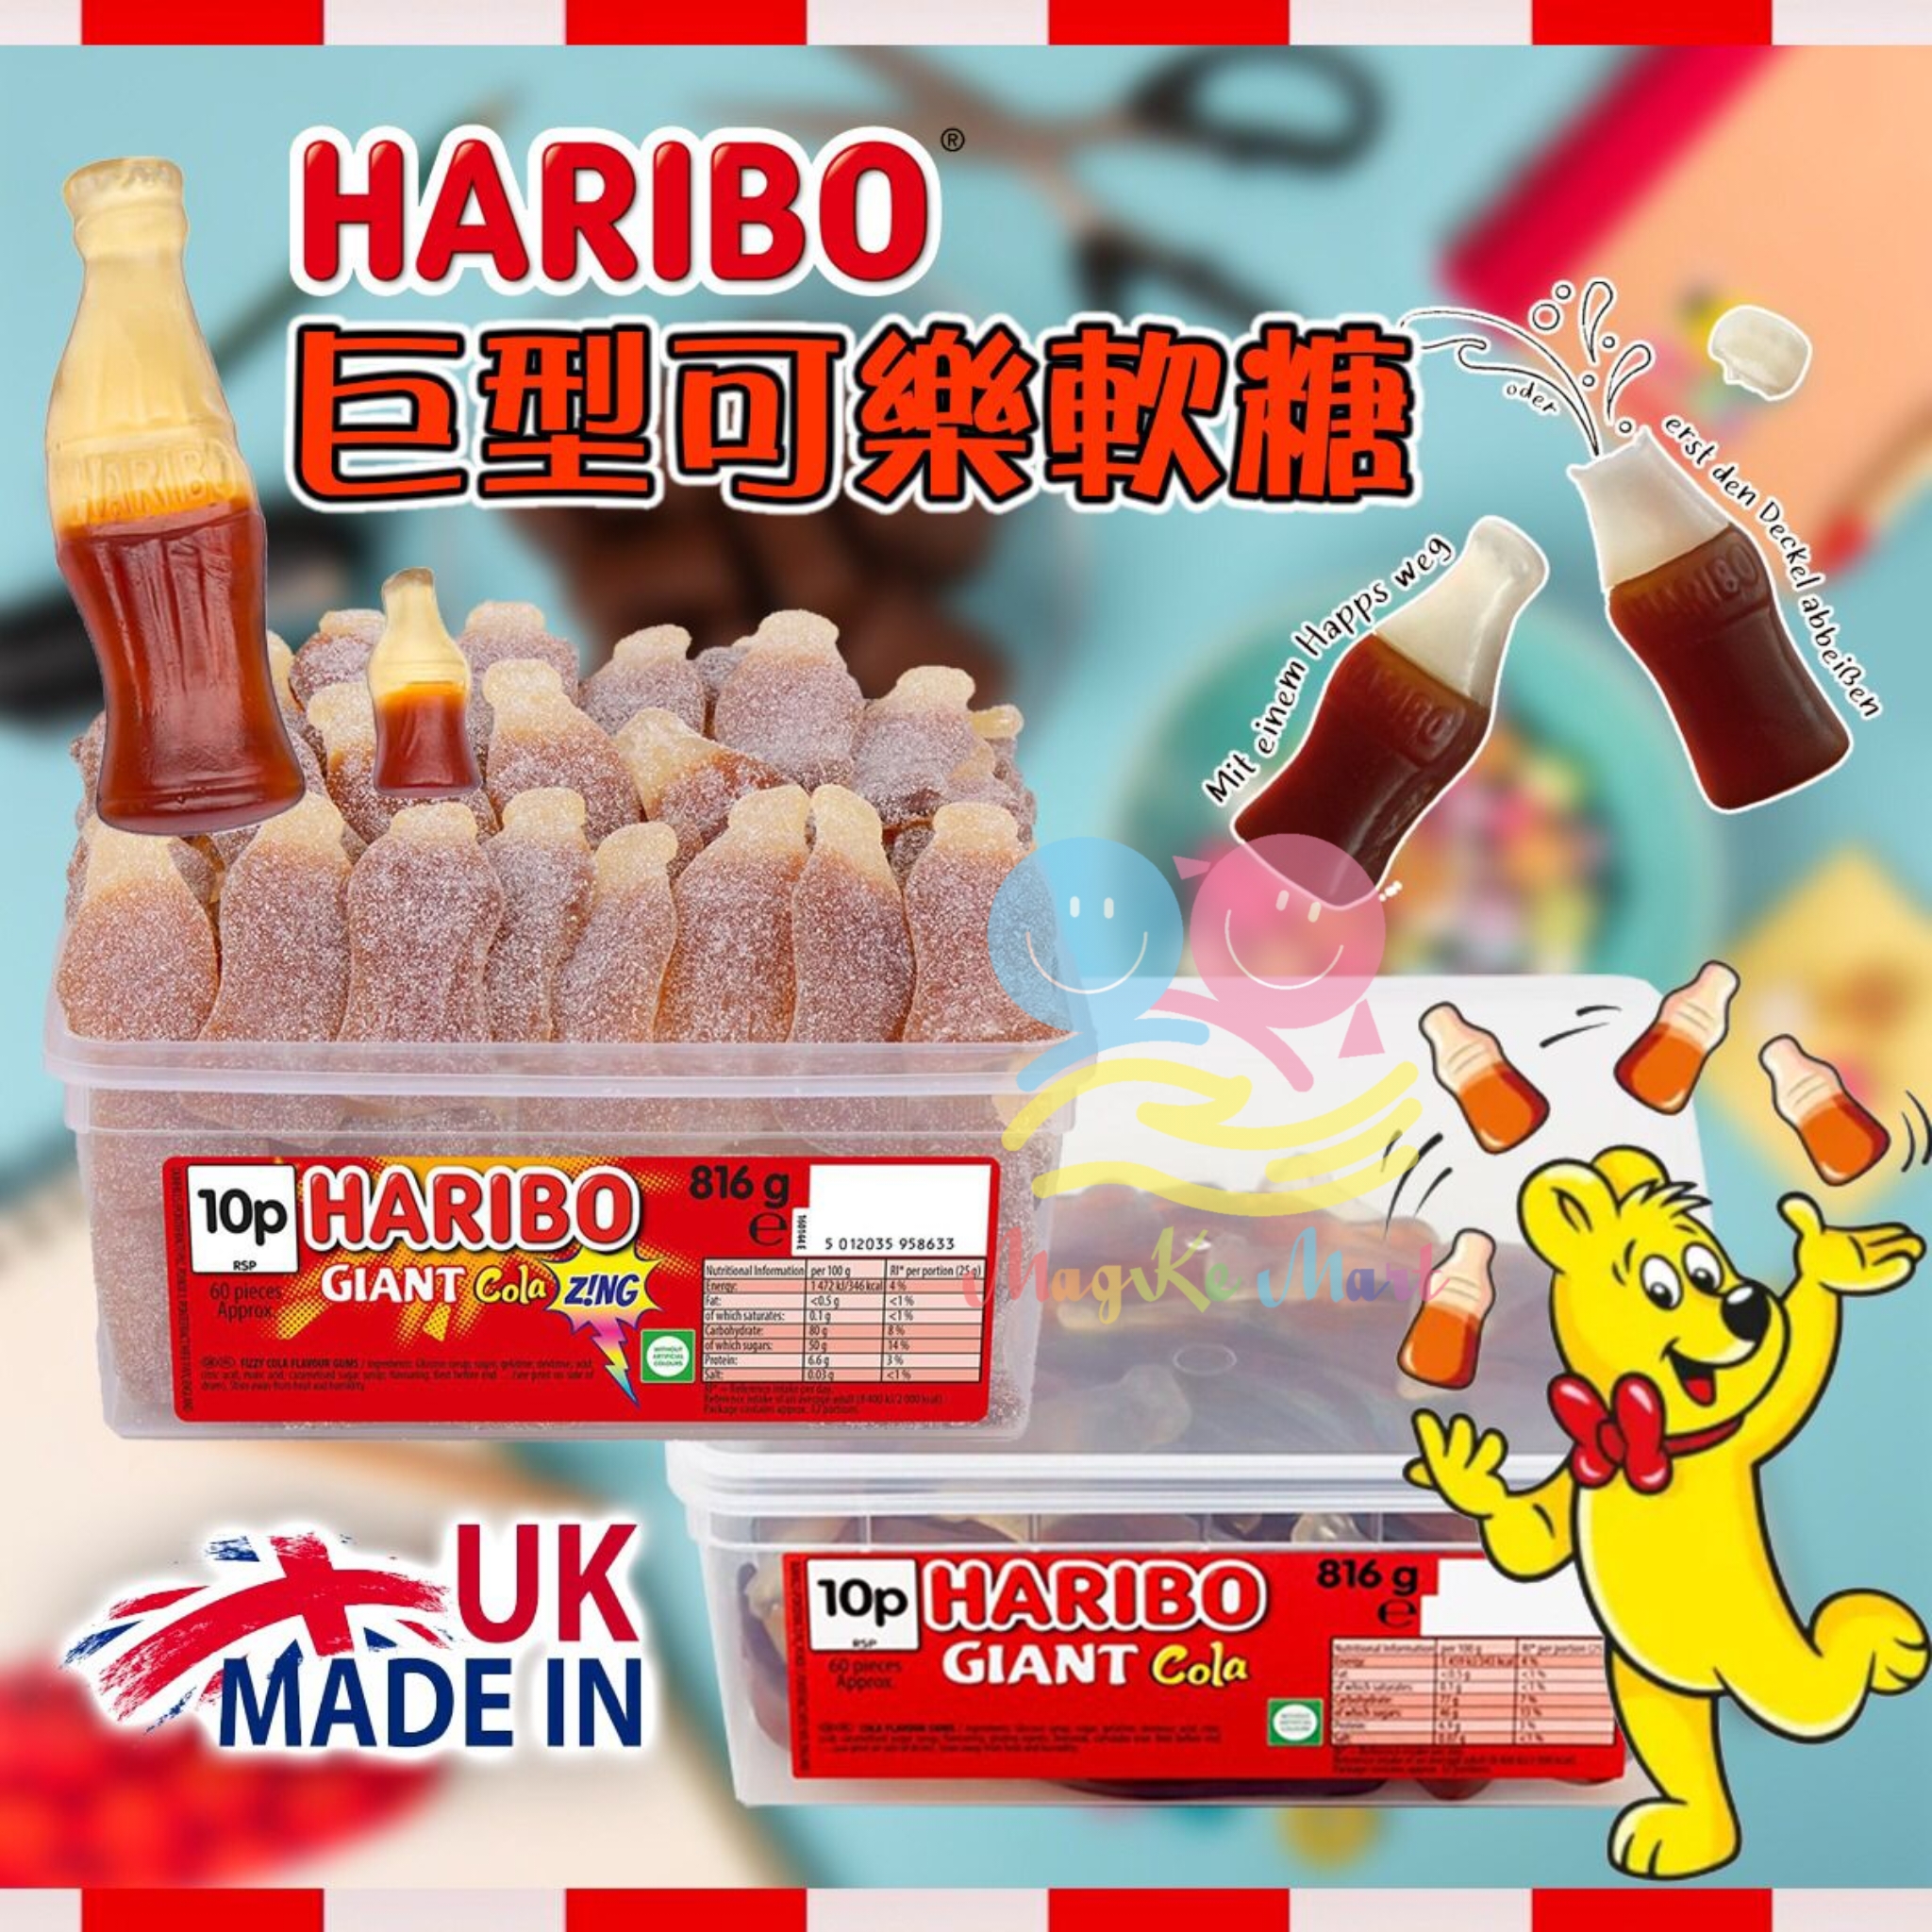 英國製 Haribo 巨型可樂軟糖 816g (A) 原味